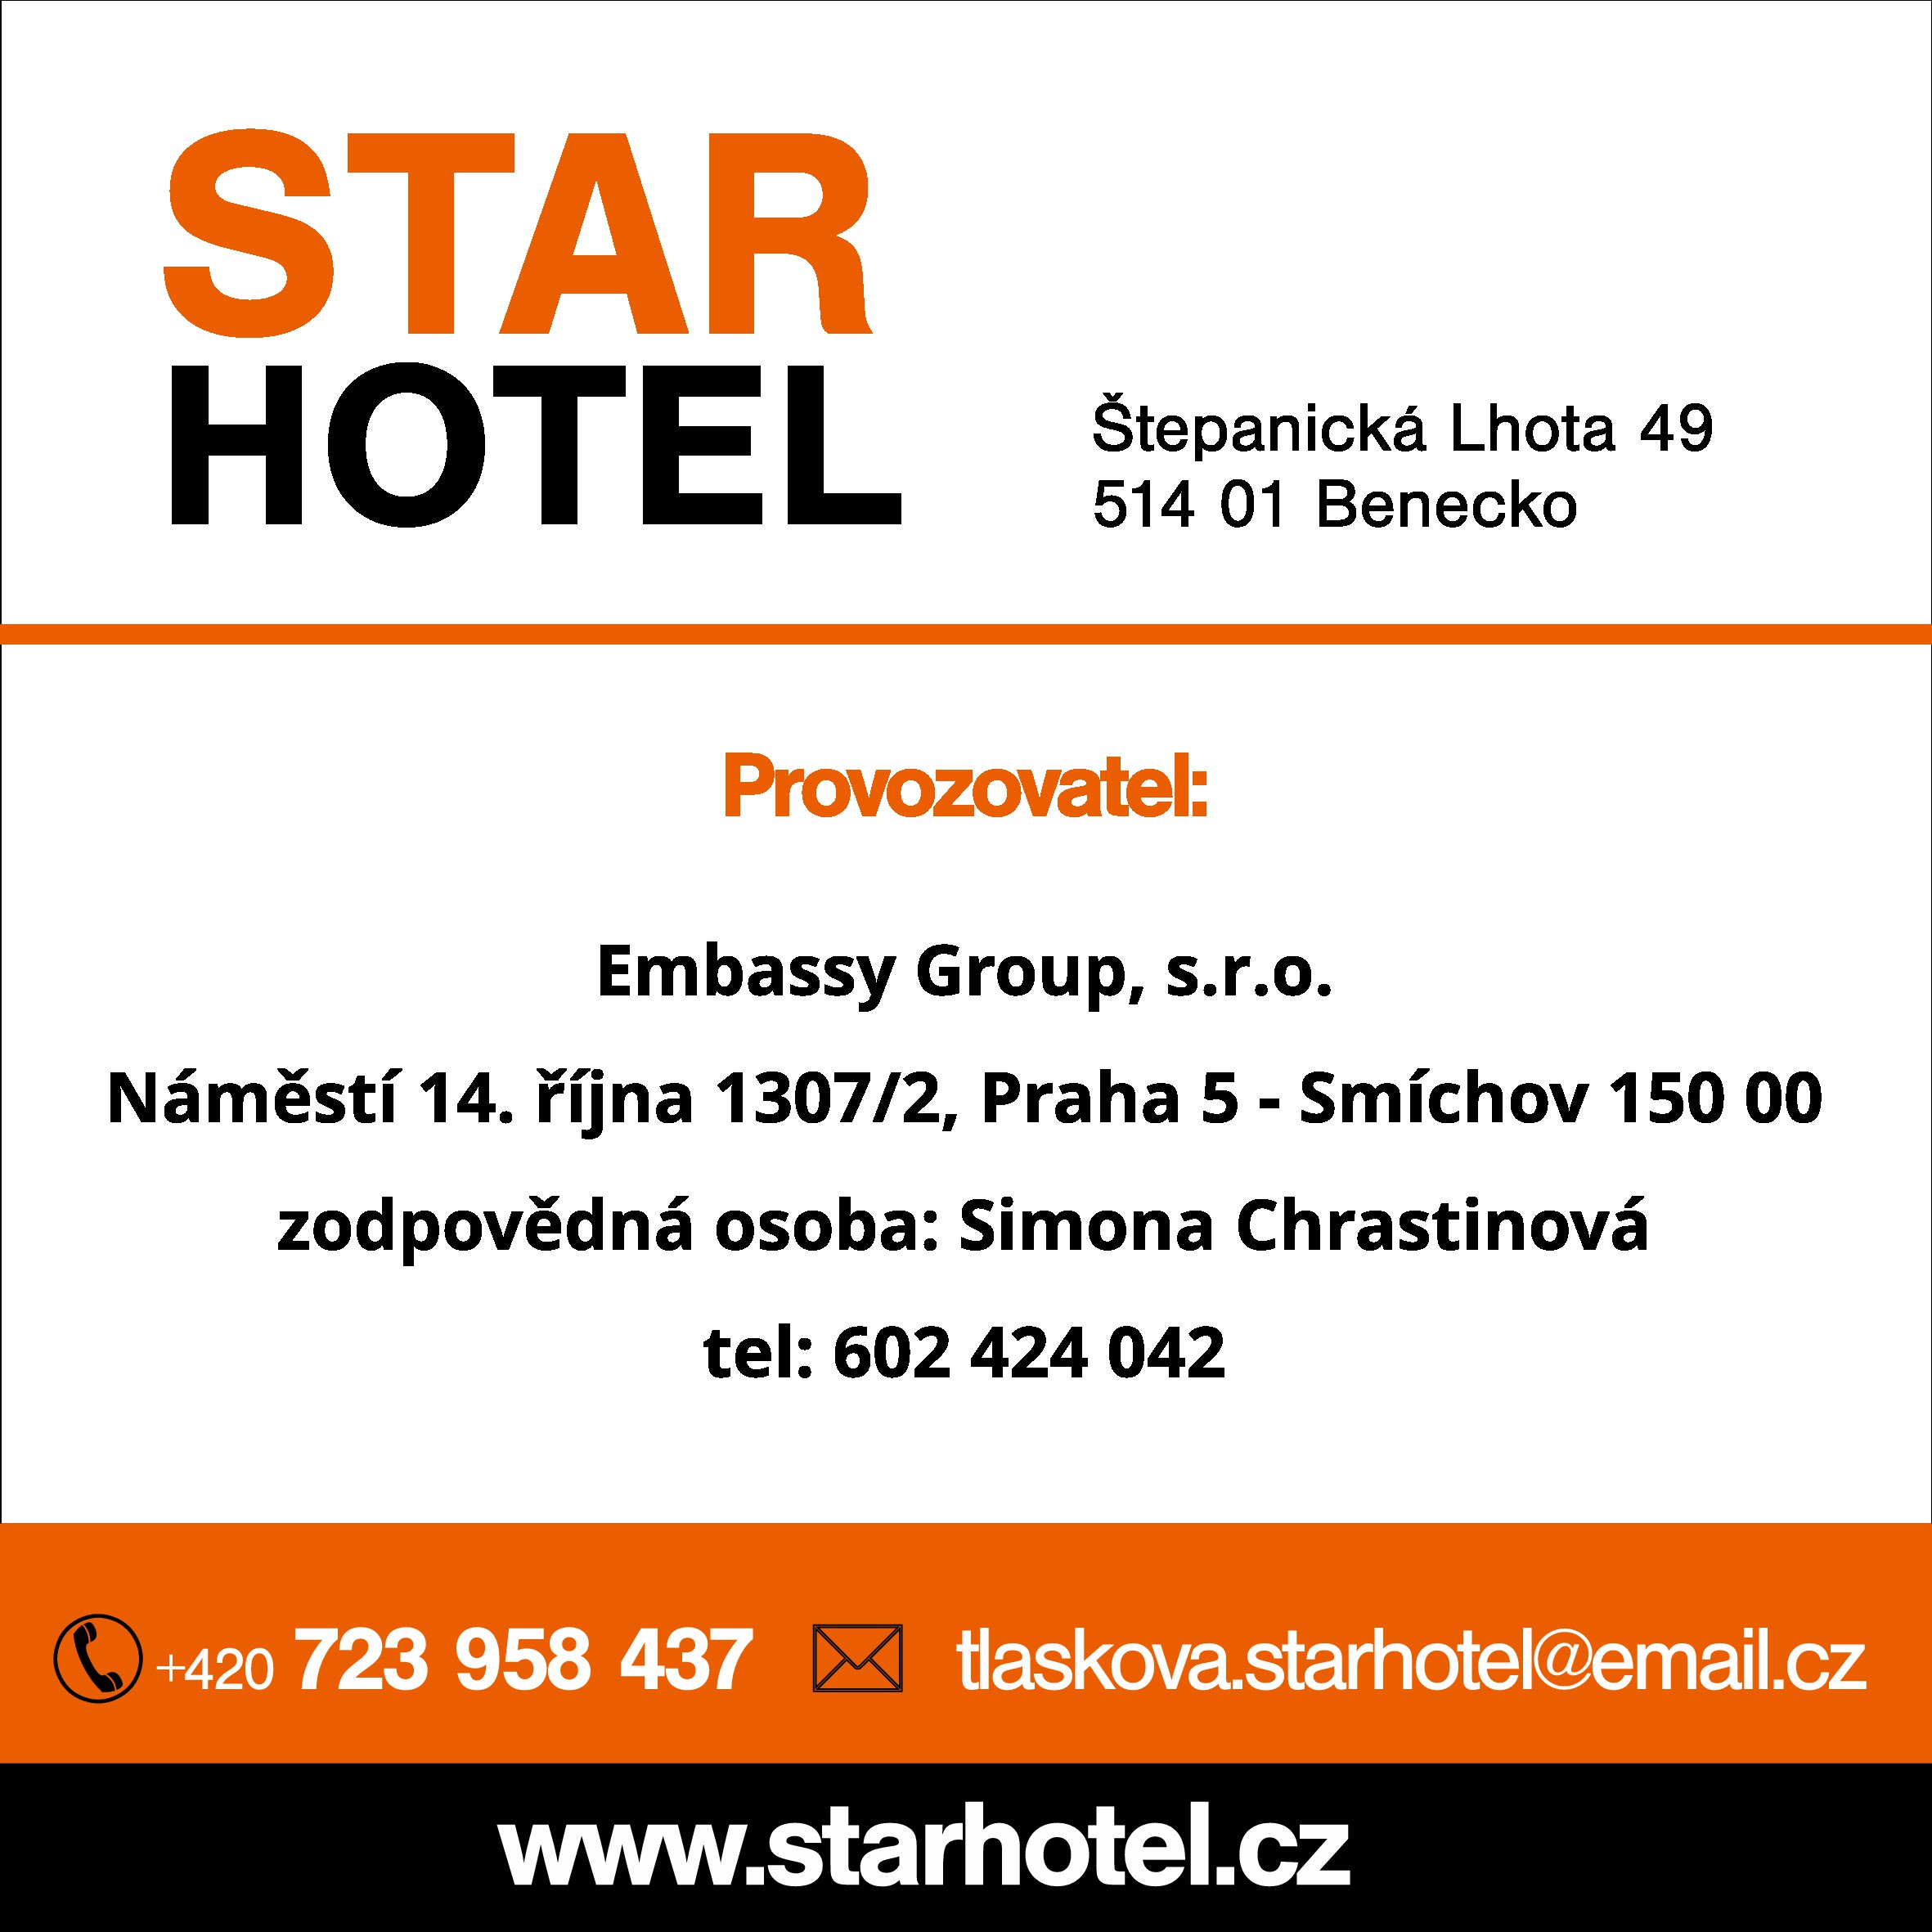 Star Hotel provozovatel